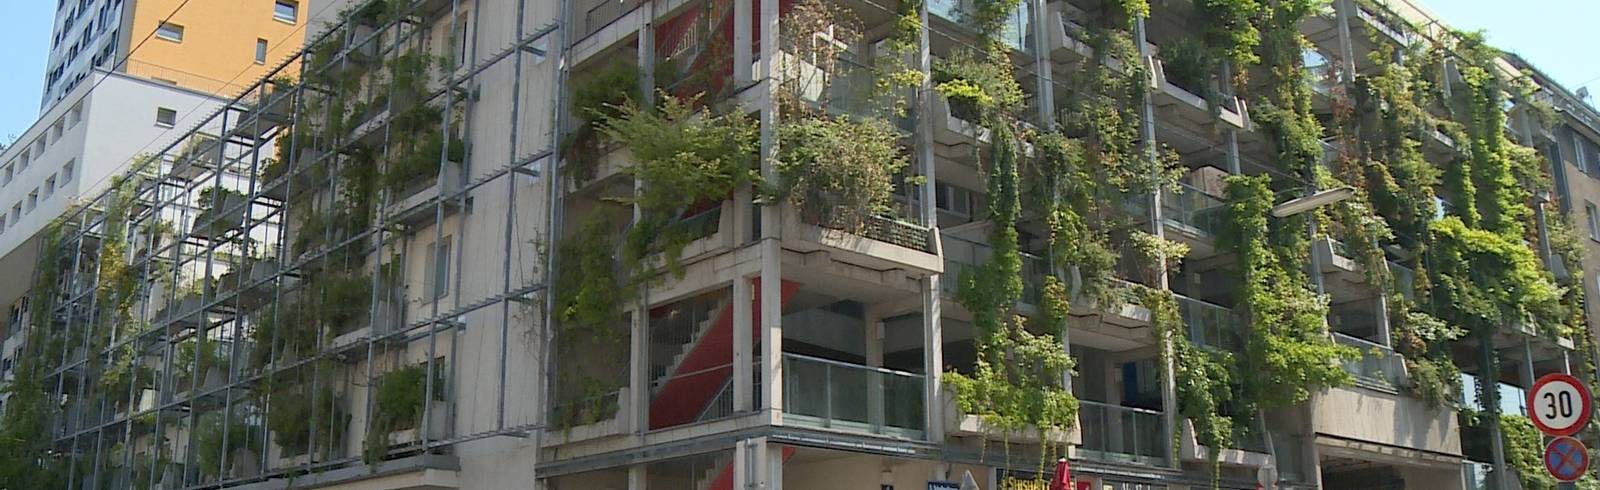 Begrünungssets für Fassaden sollen Wien abkühlen